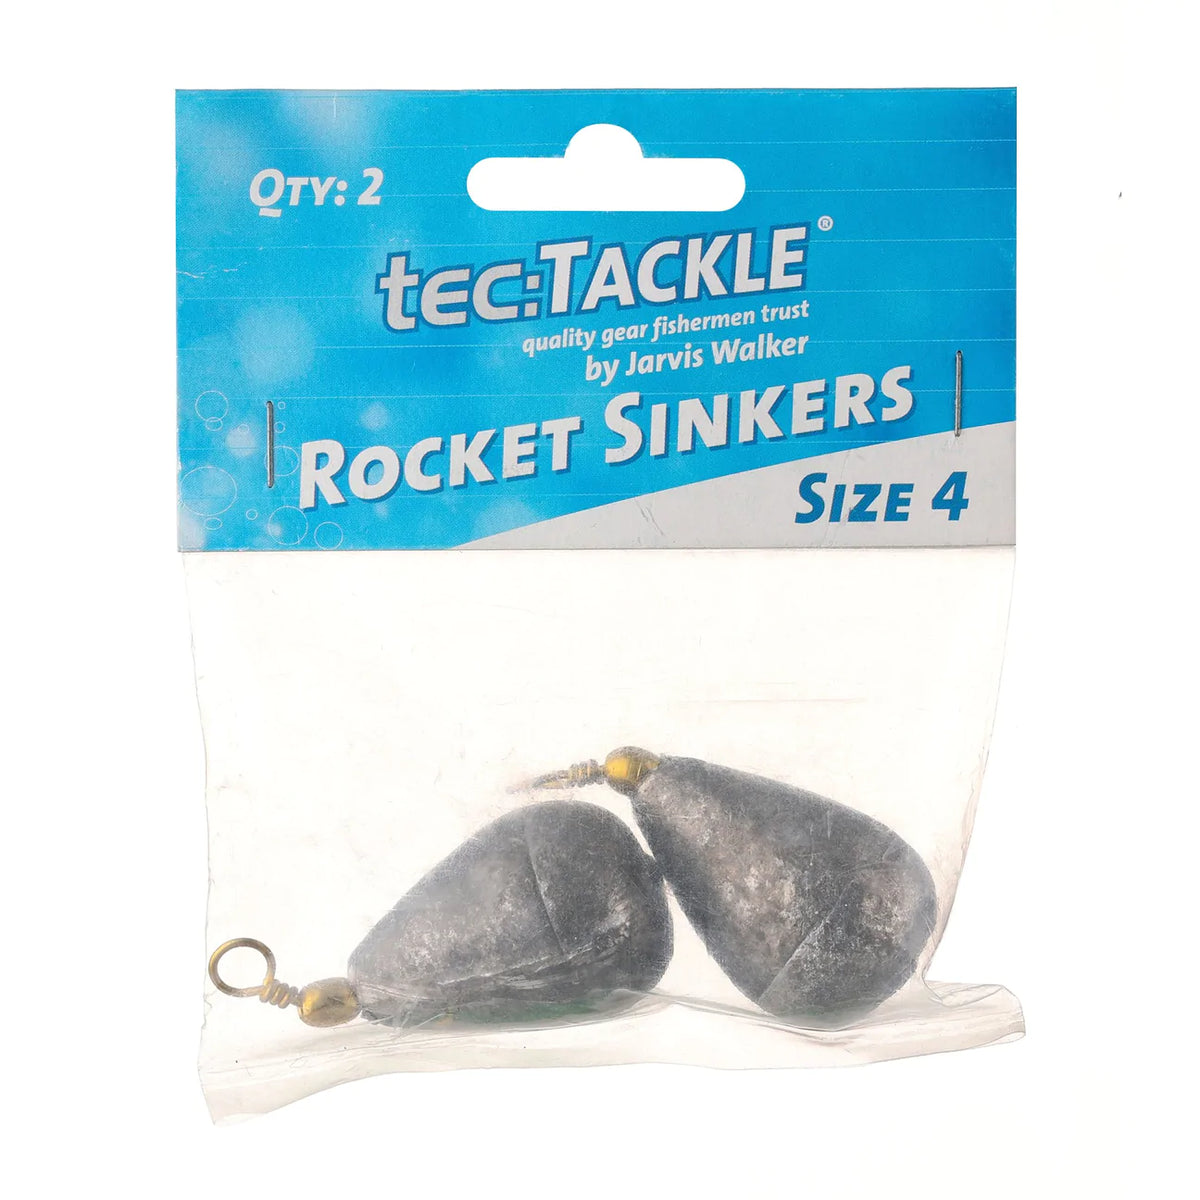 Tectackle Rocket Sinker